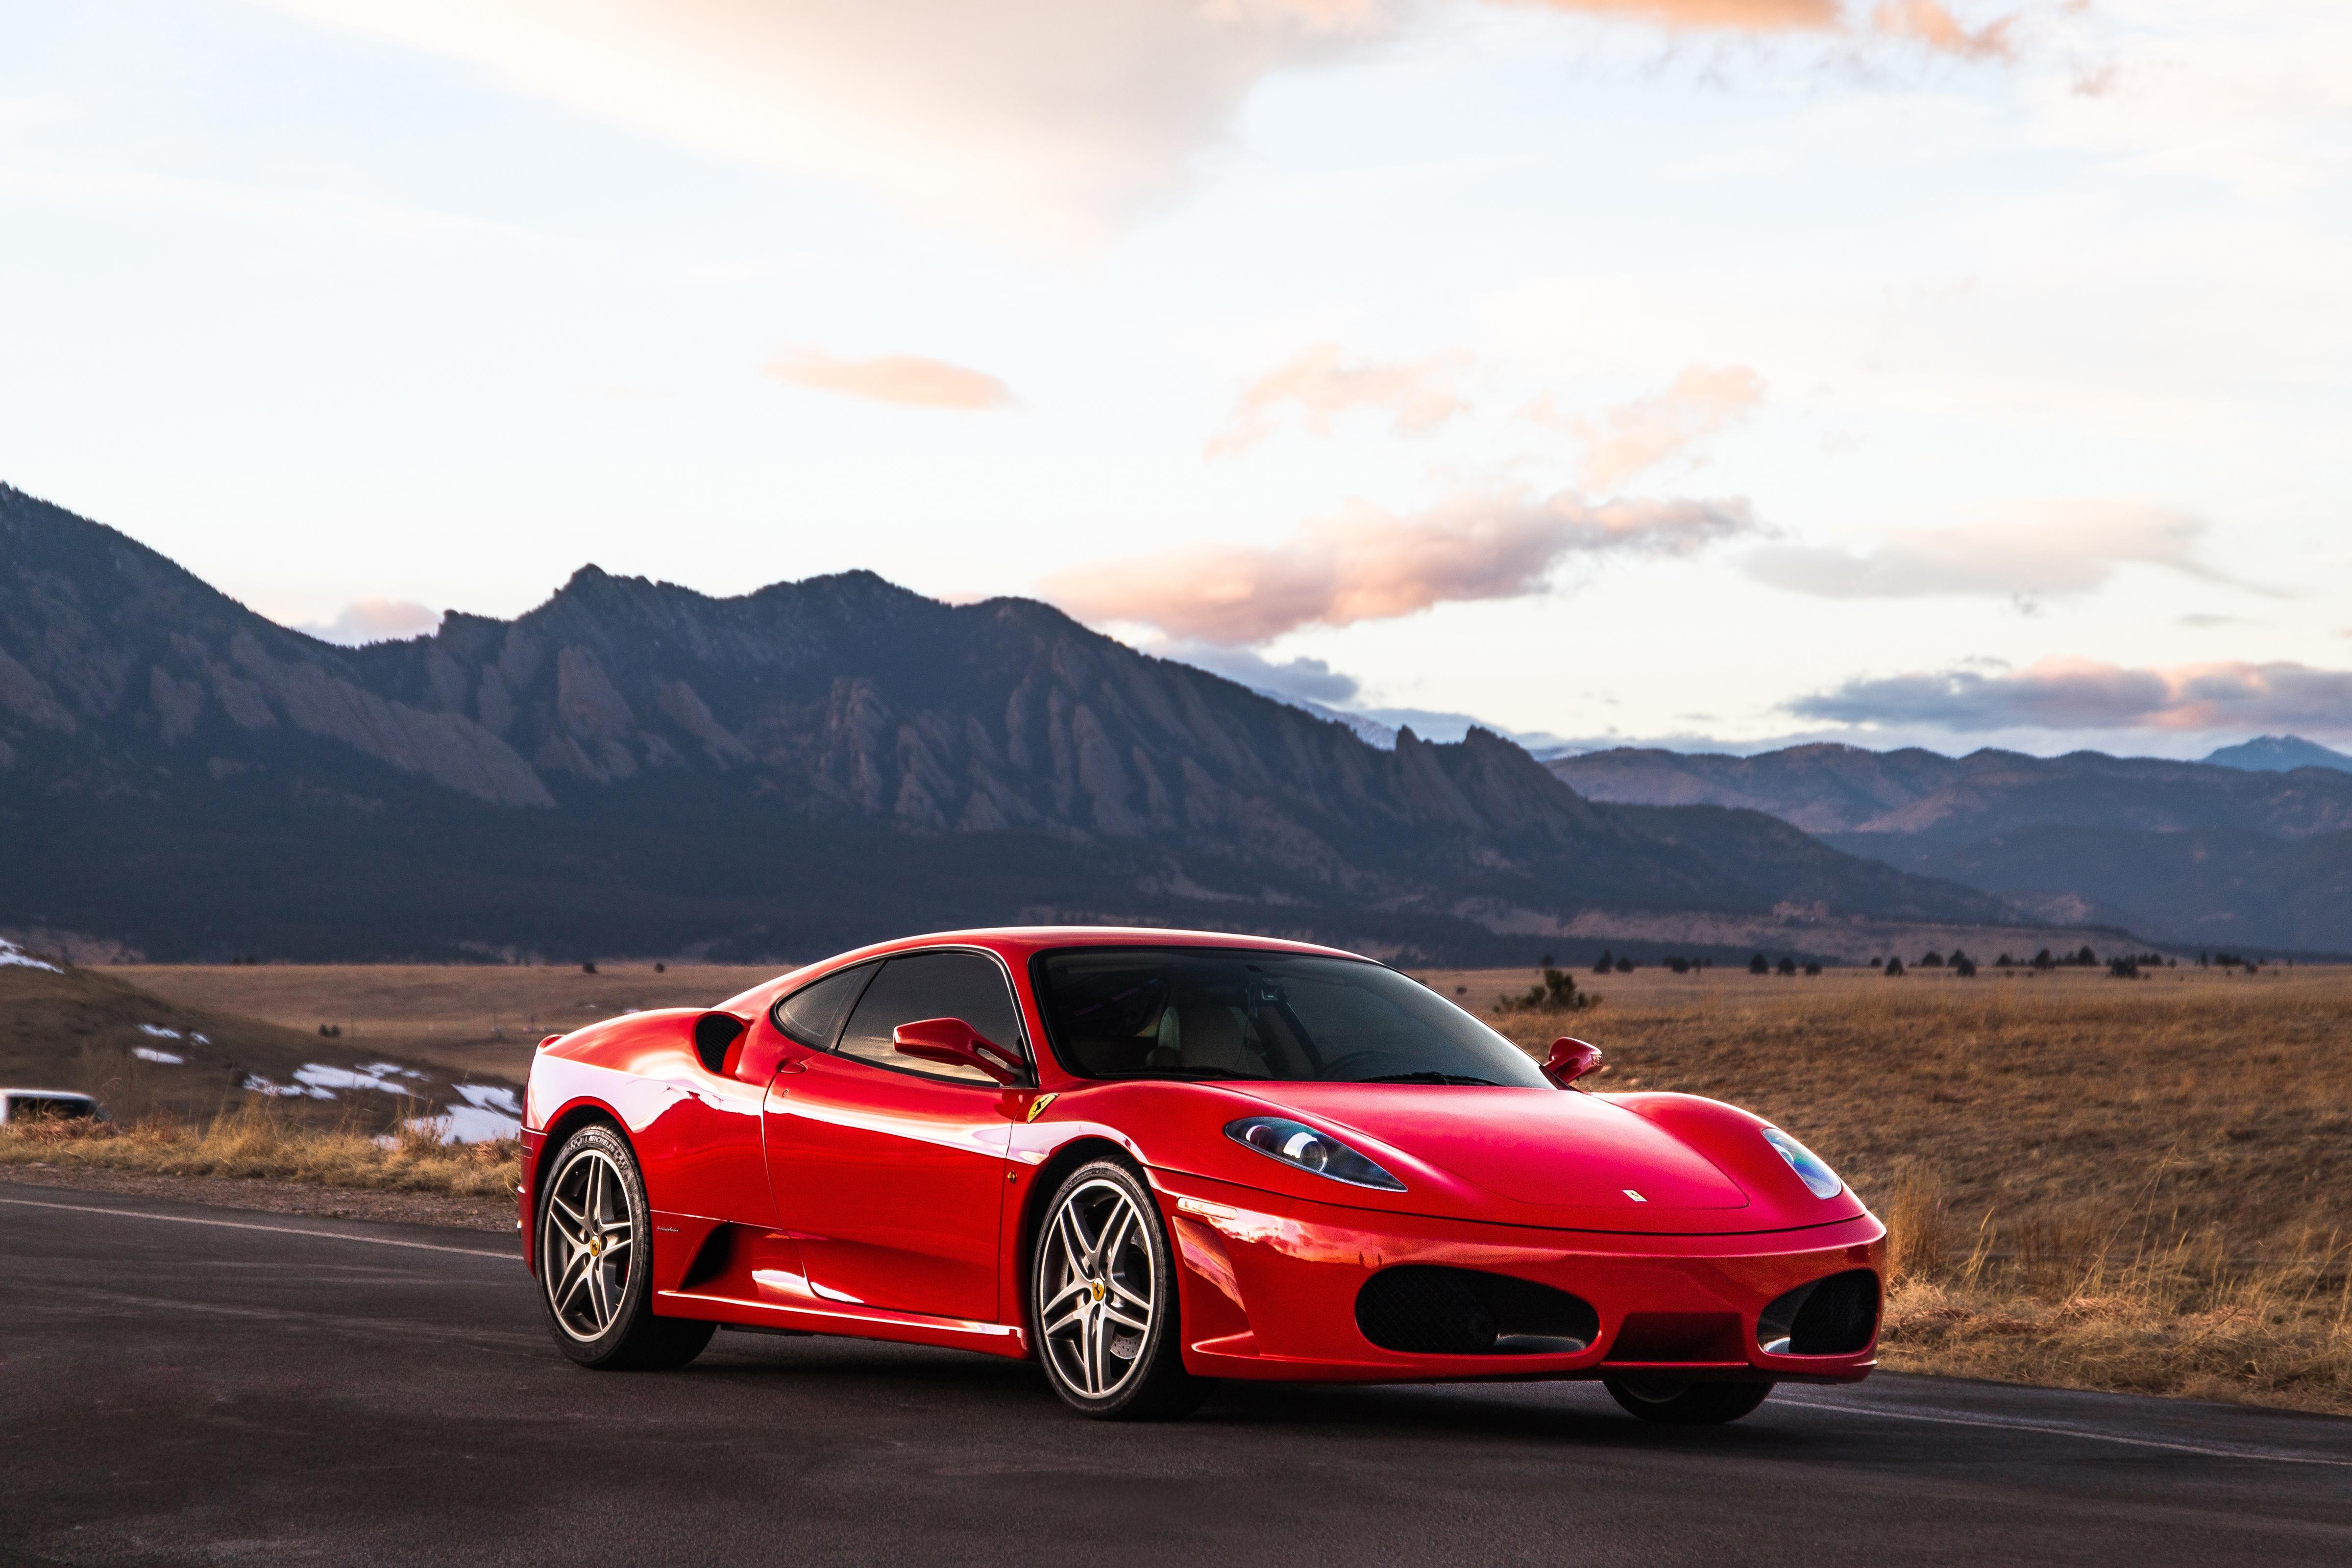 4800 x 3200 · jpeg - Ferrari F430 4k Ultra HD Wallpaper | Background Image | 4800x3200 | ID ...